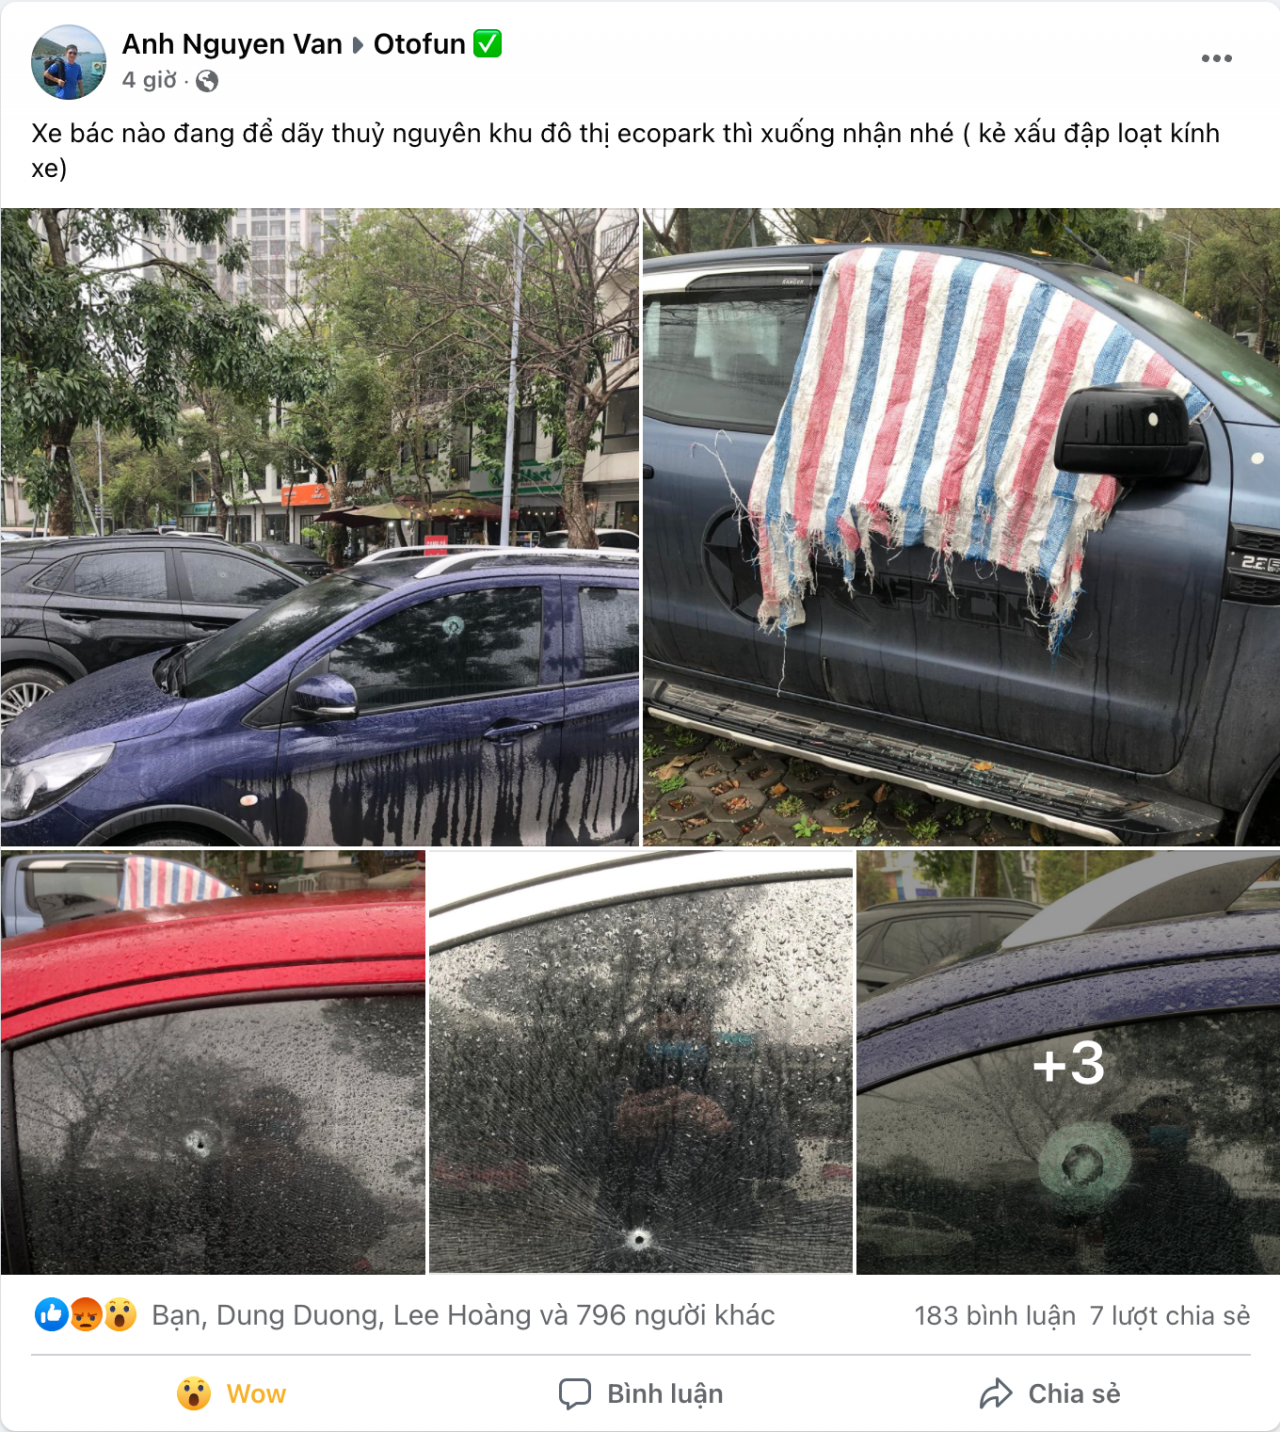 Hàng loạt xe ô tô bị phá kính tại một khu đô thị gần Hà Nội